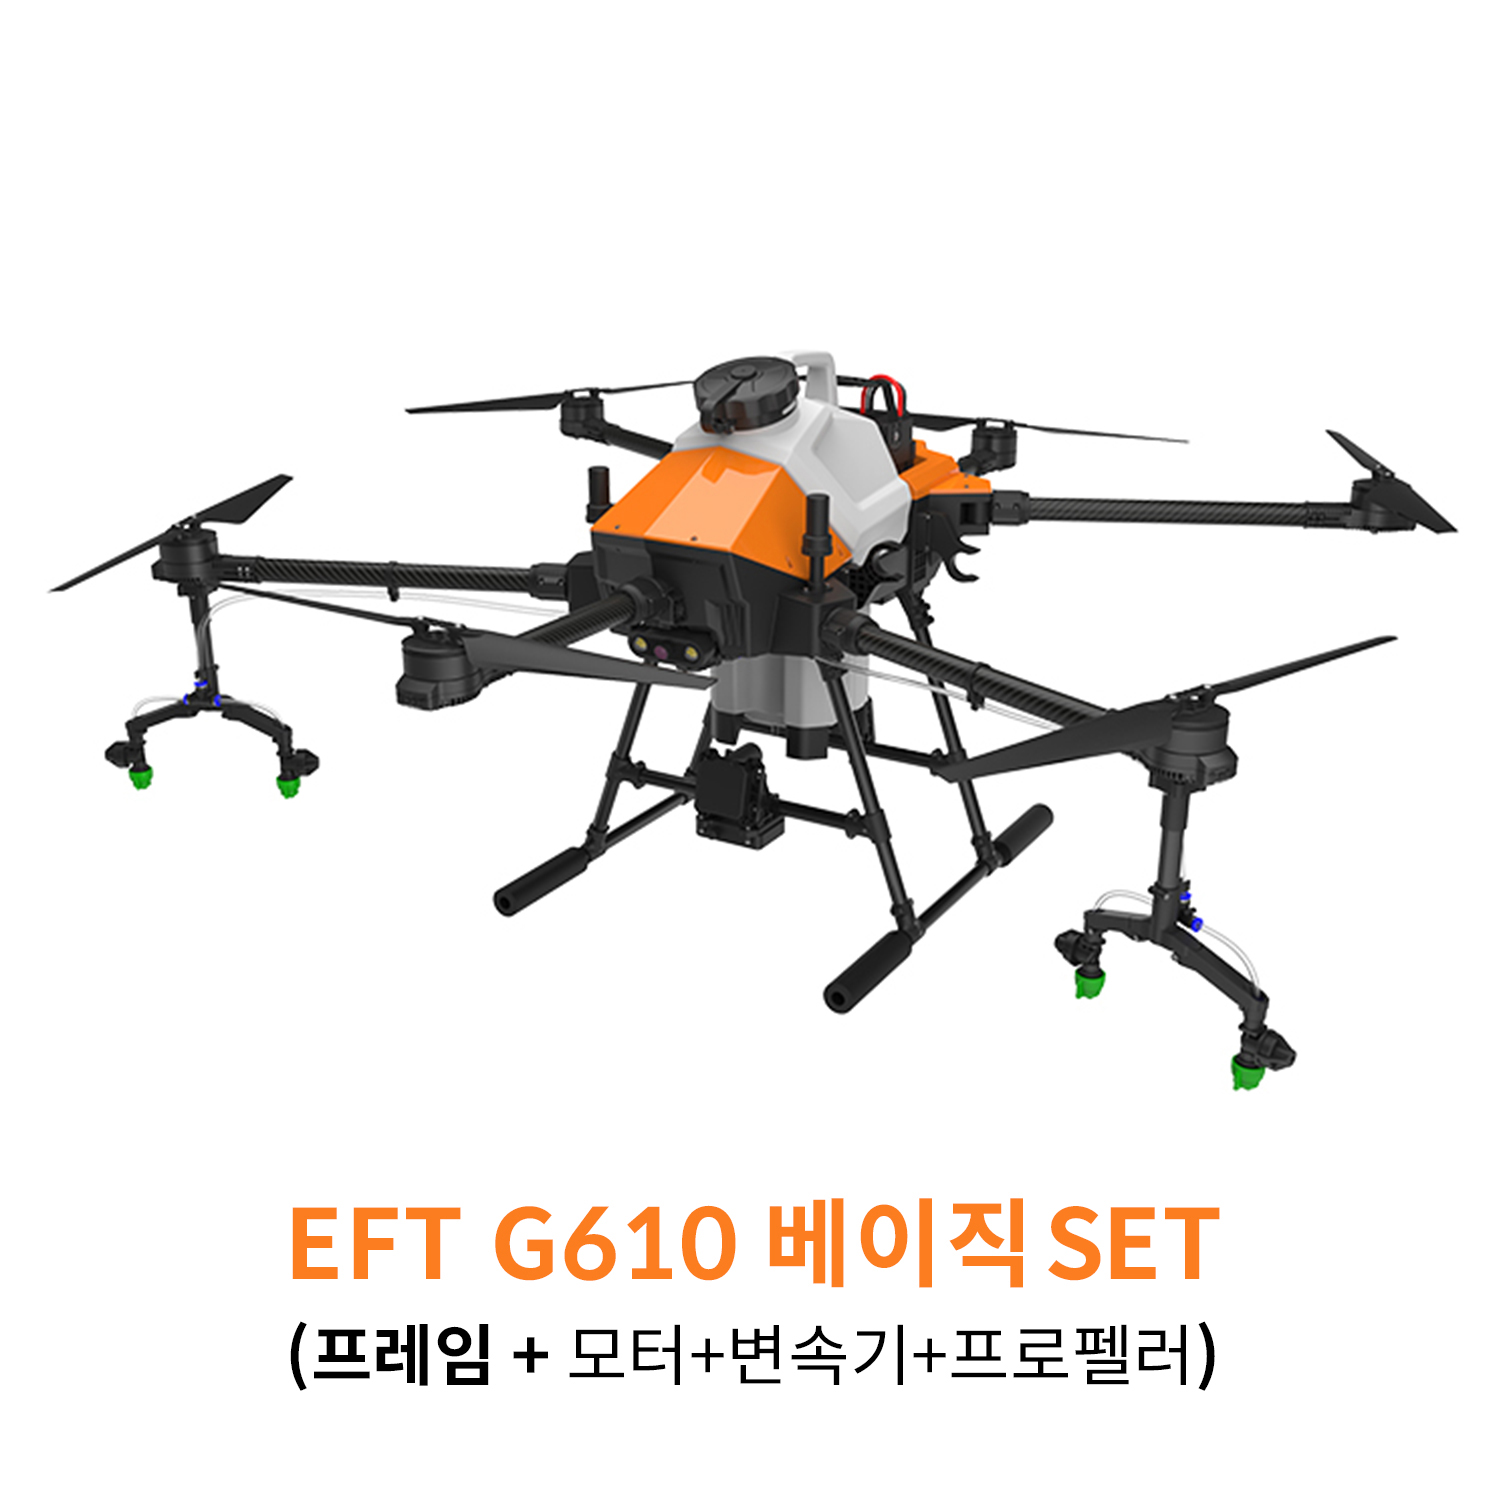 EFT G610 베이직 SET 농업 방제 드론하비윙 x6 파워시스템 탑재 헬셀